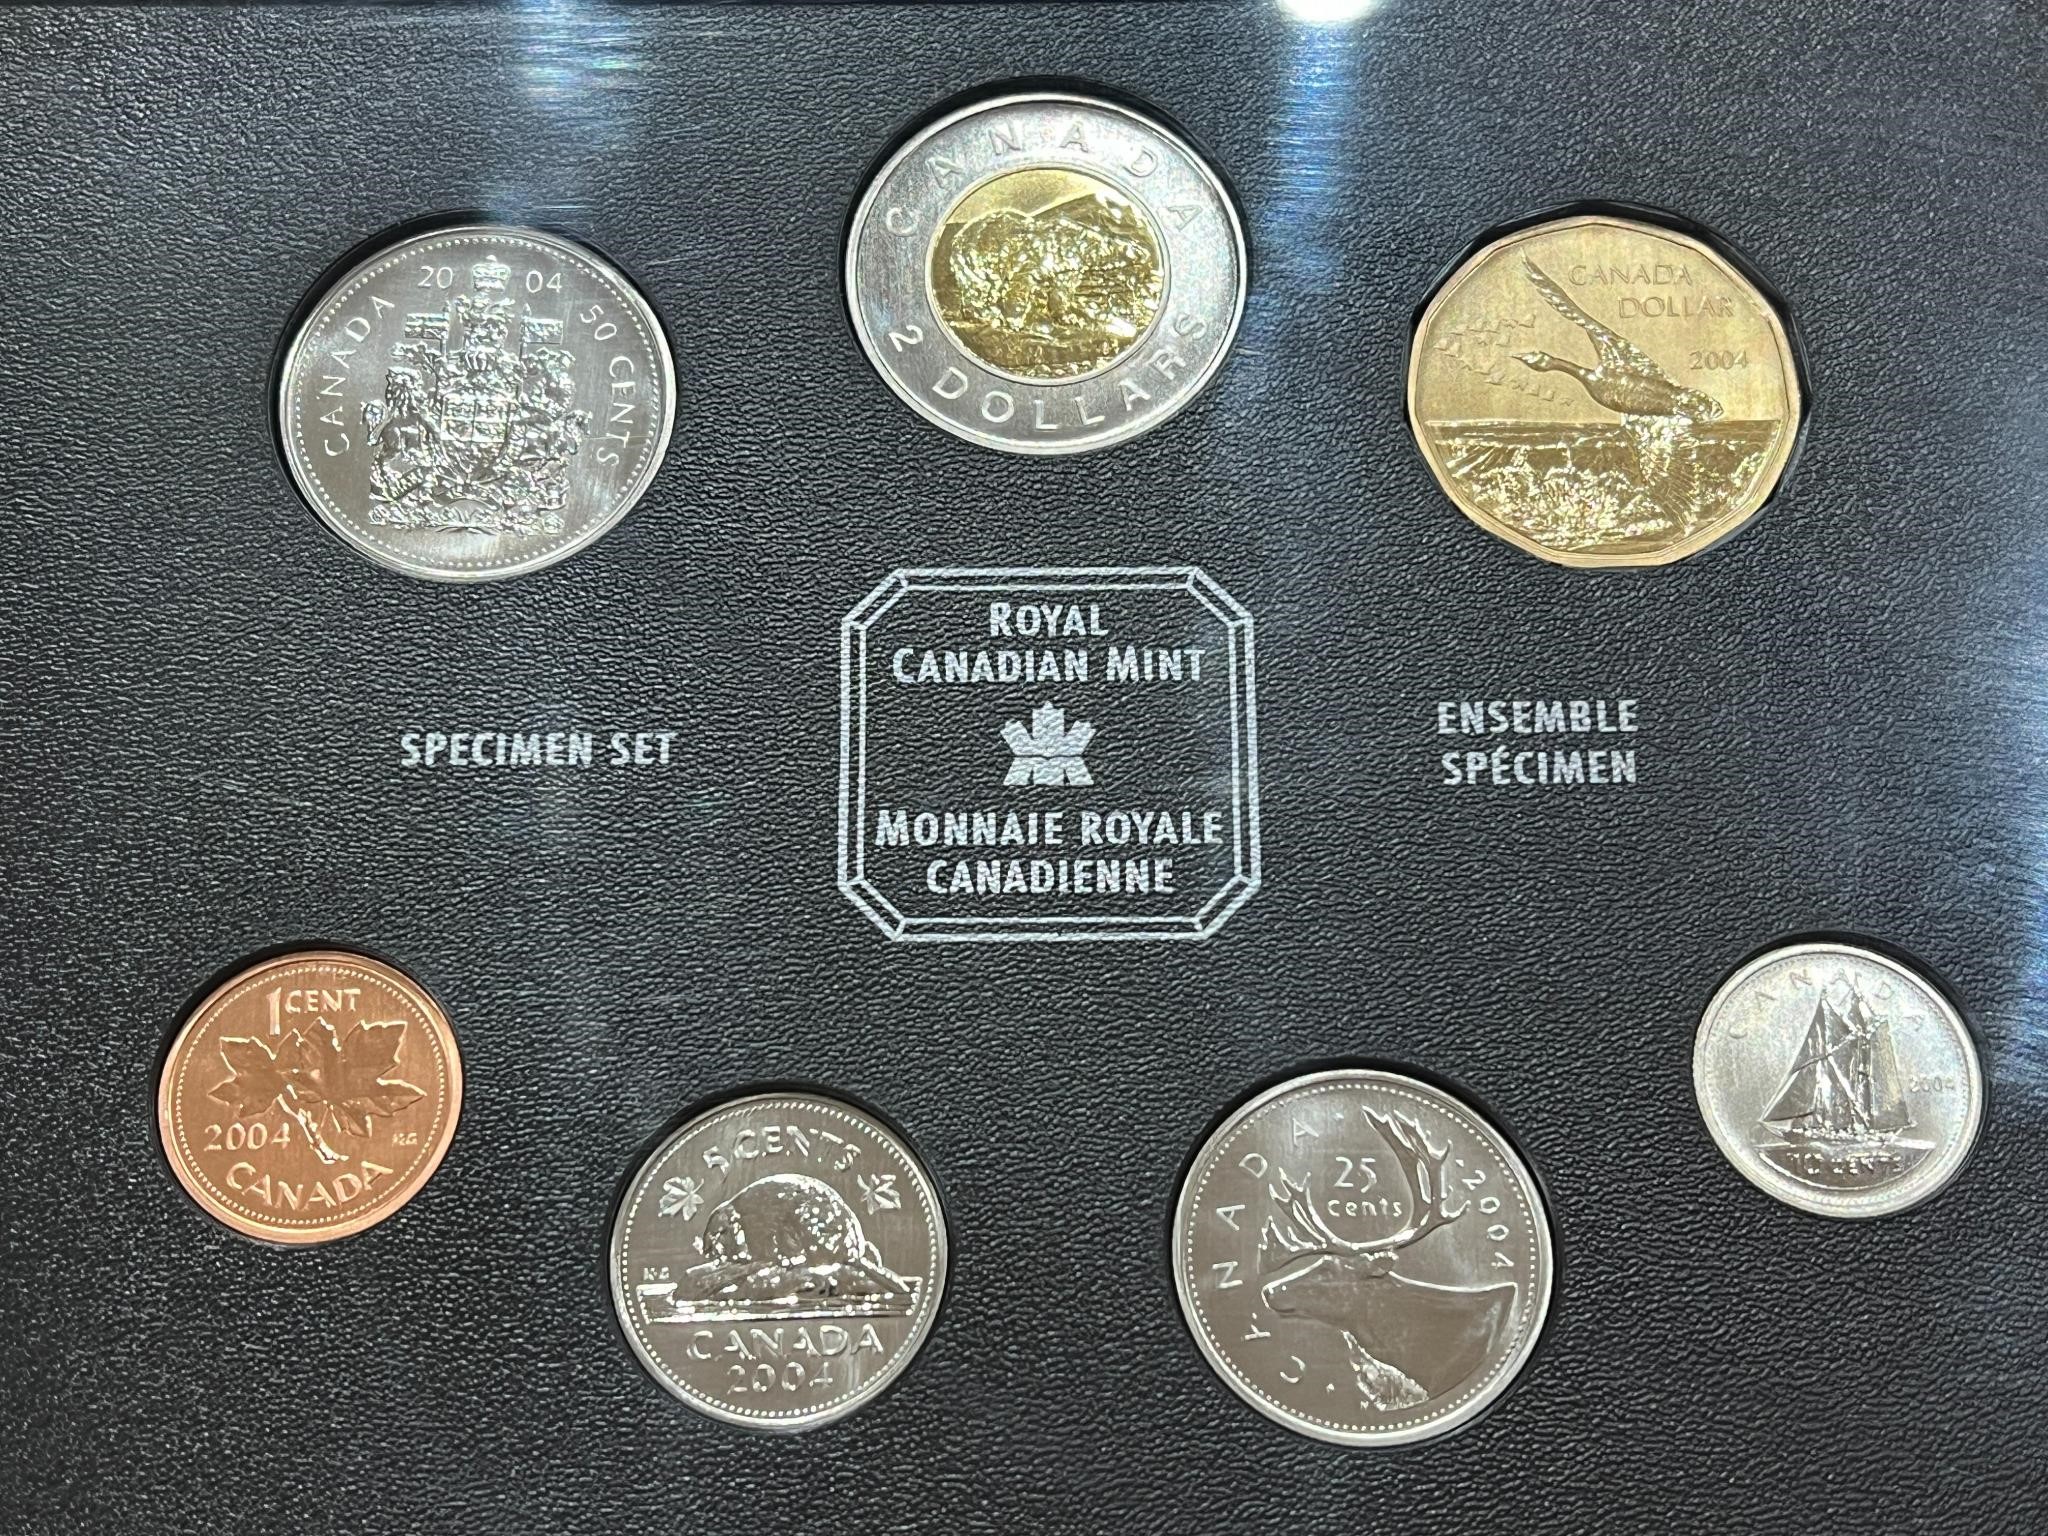 2004 Cdn Specimen Coin Set in Green Binder